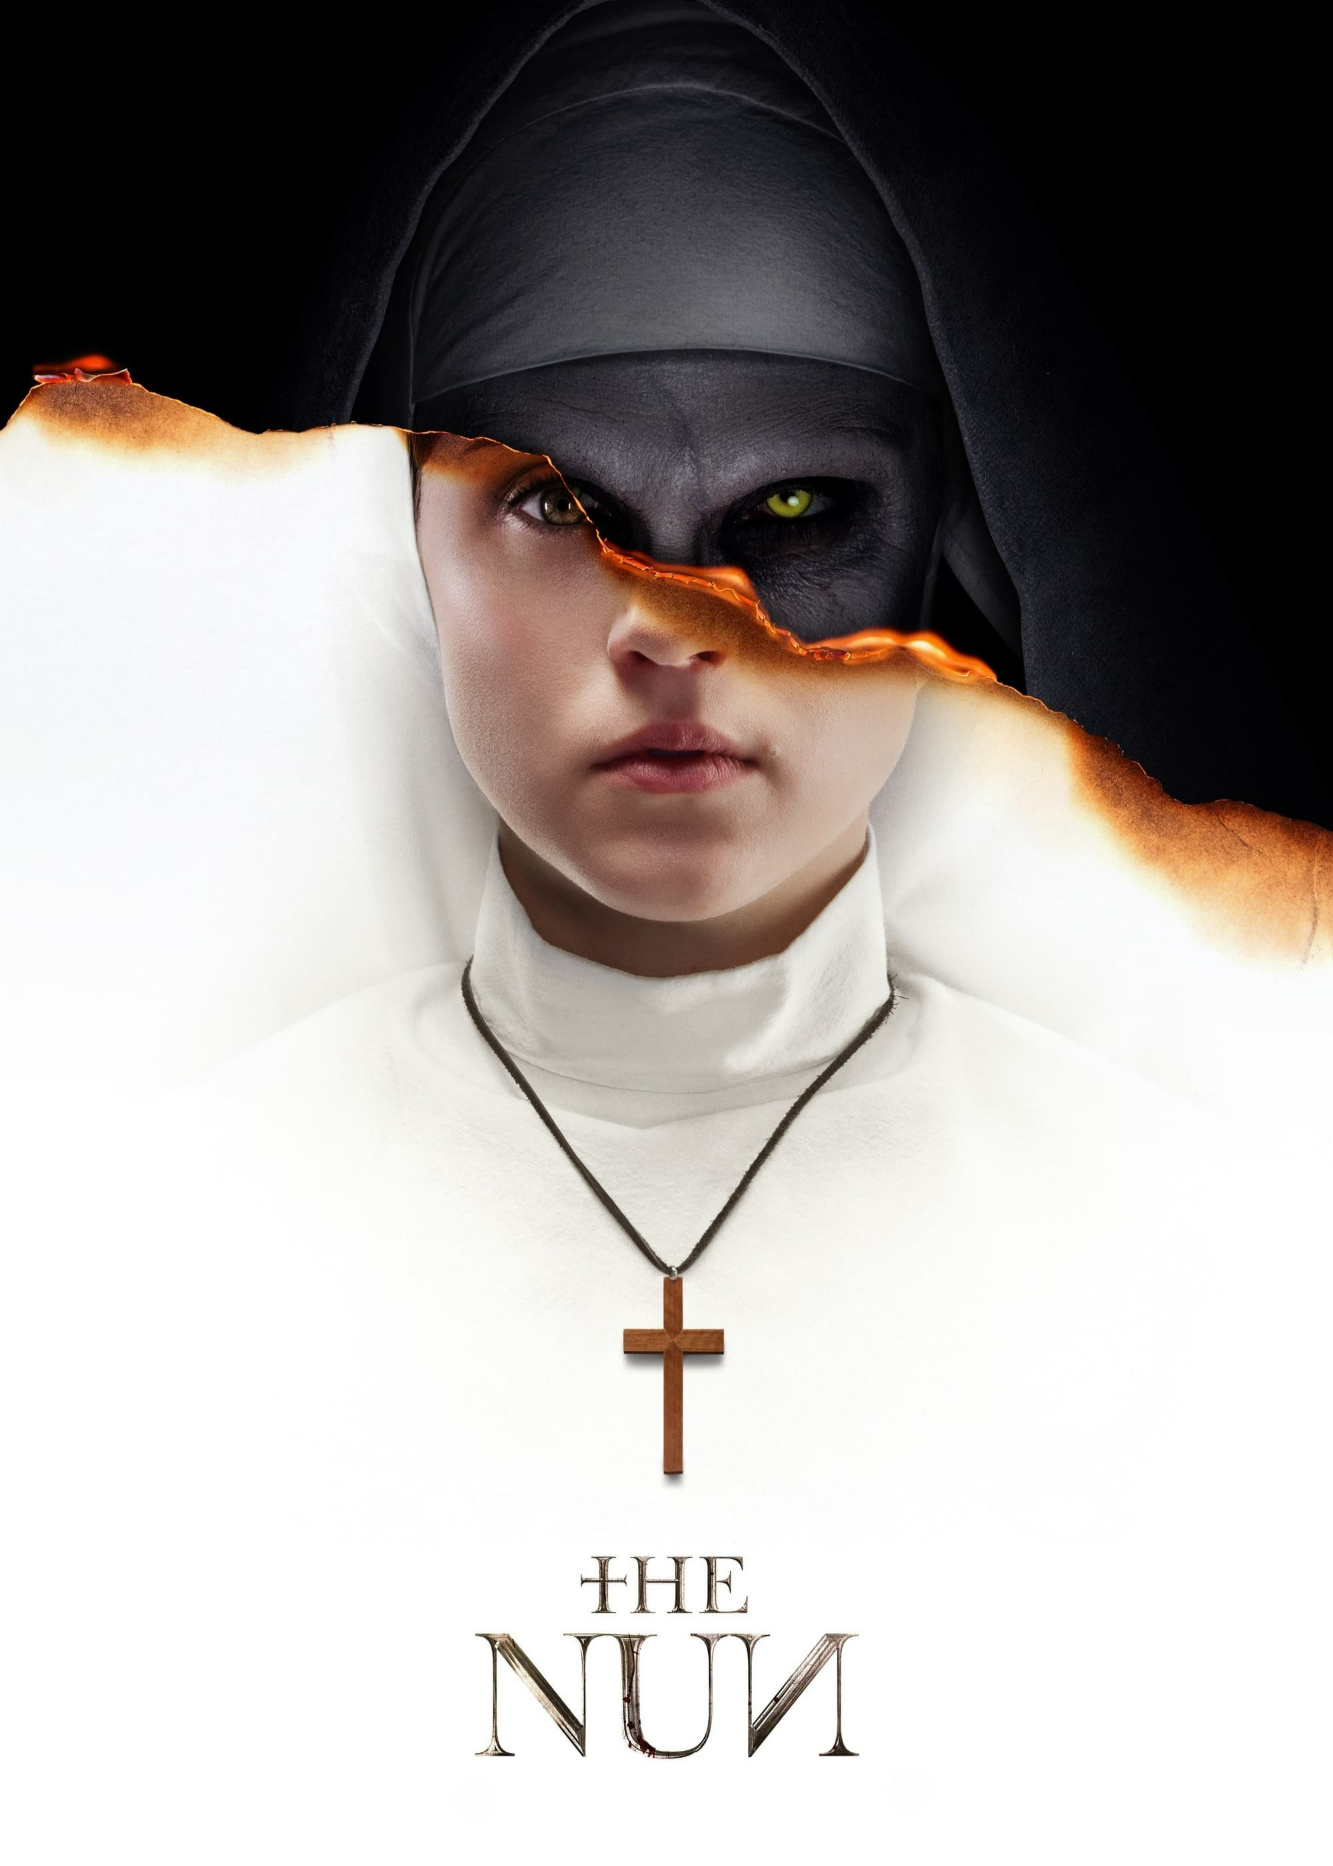 Xem Phim Ác Quỷ Ma Sơ (The Nun)